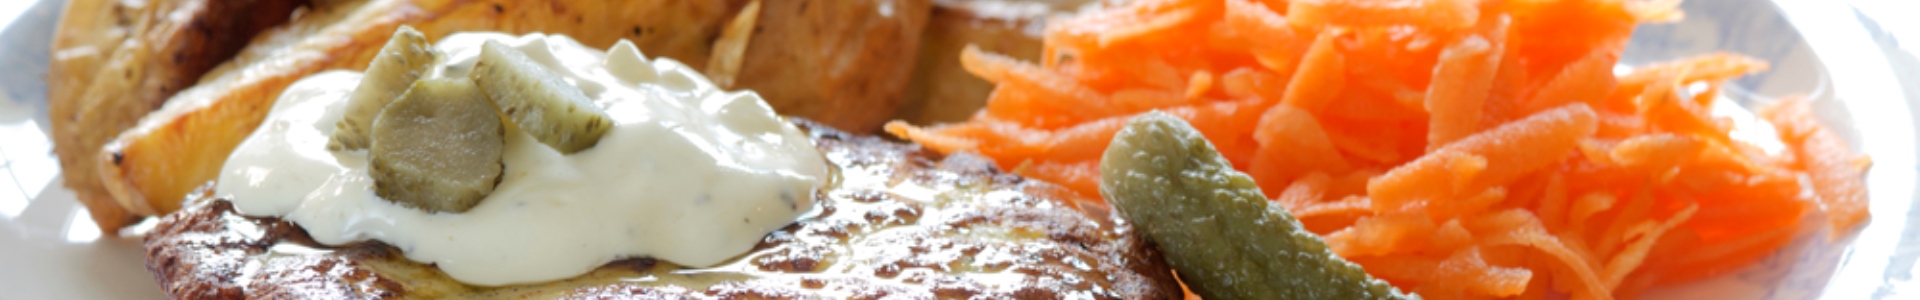 Котлетки з сайди і лосося з соусом та картоплею